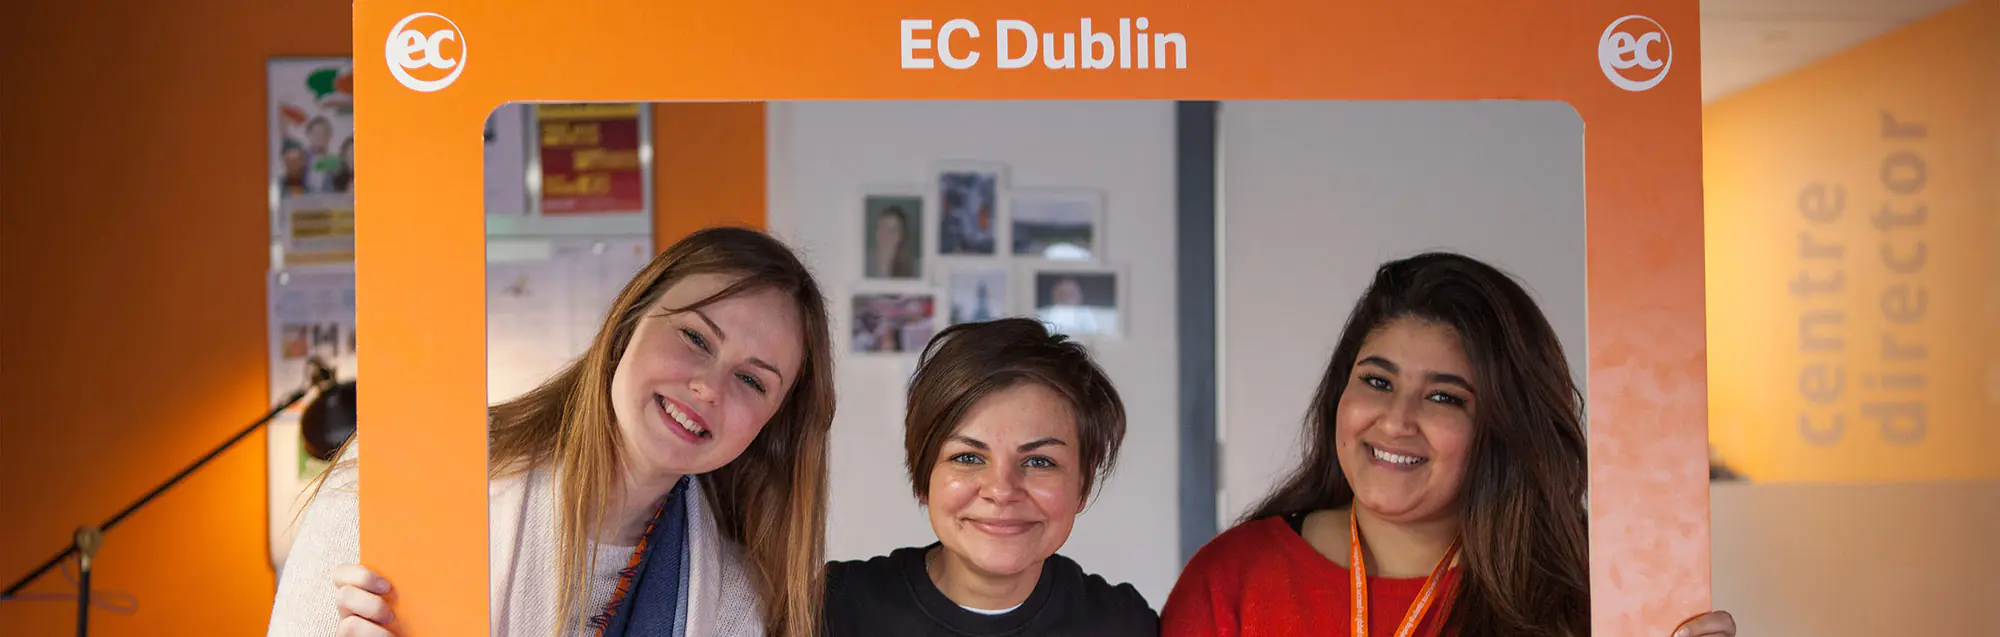 Corsi di Inglese per bambini, giovani e ragazzi a EC Dublin 30plus